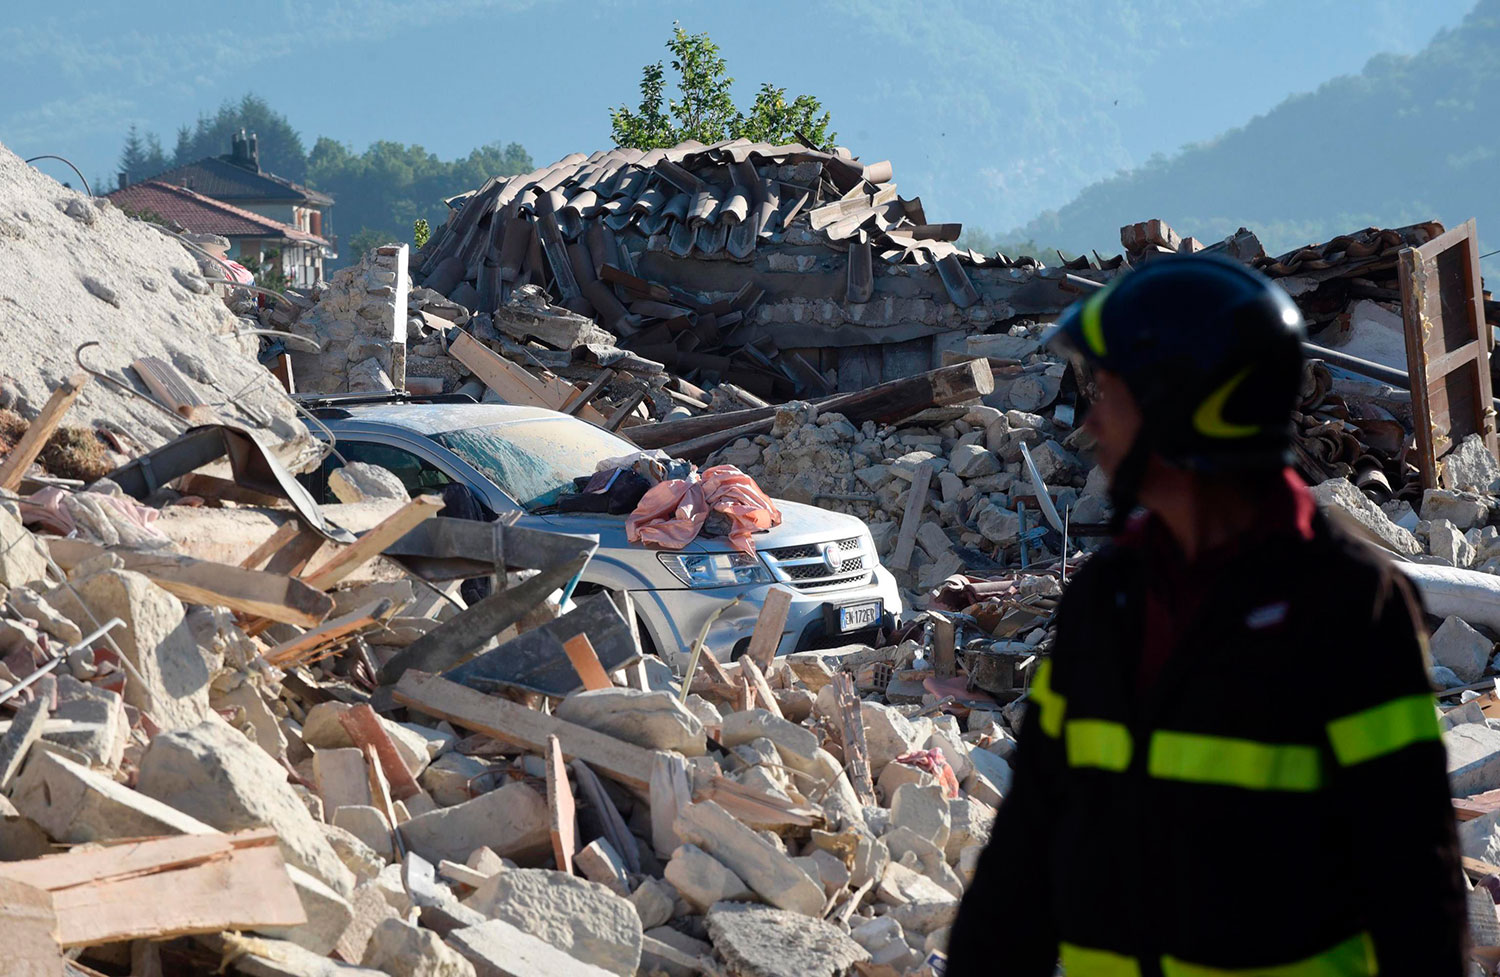  Réplicas sísmicas en el centro de Italia causan pánico